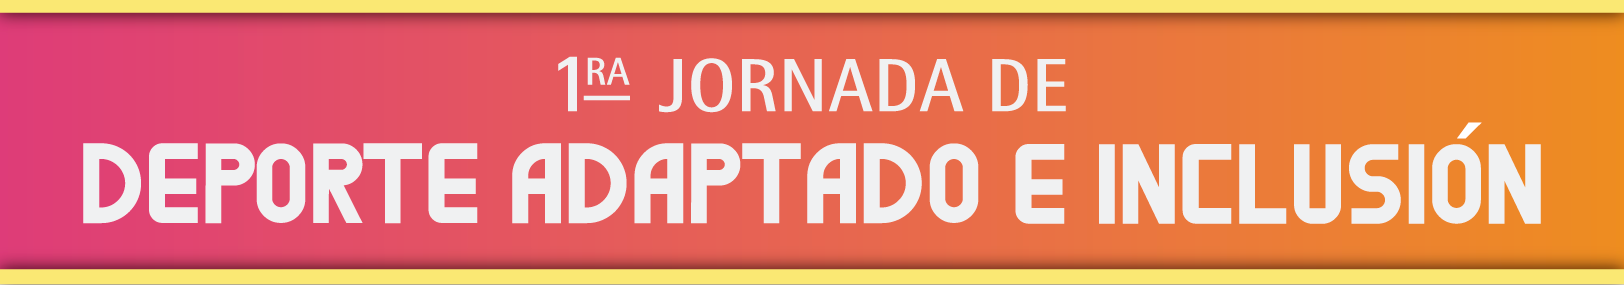 FRIBE_Jornada Deporte Adaptado